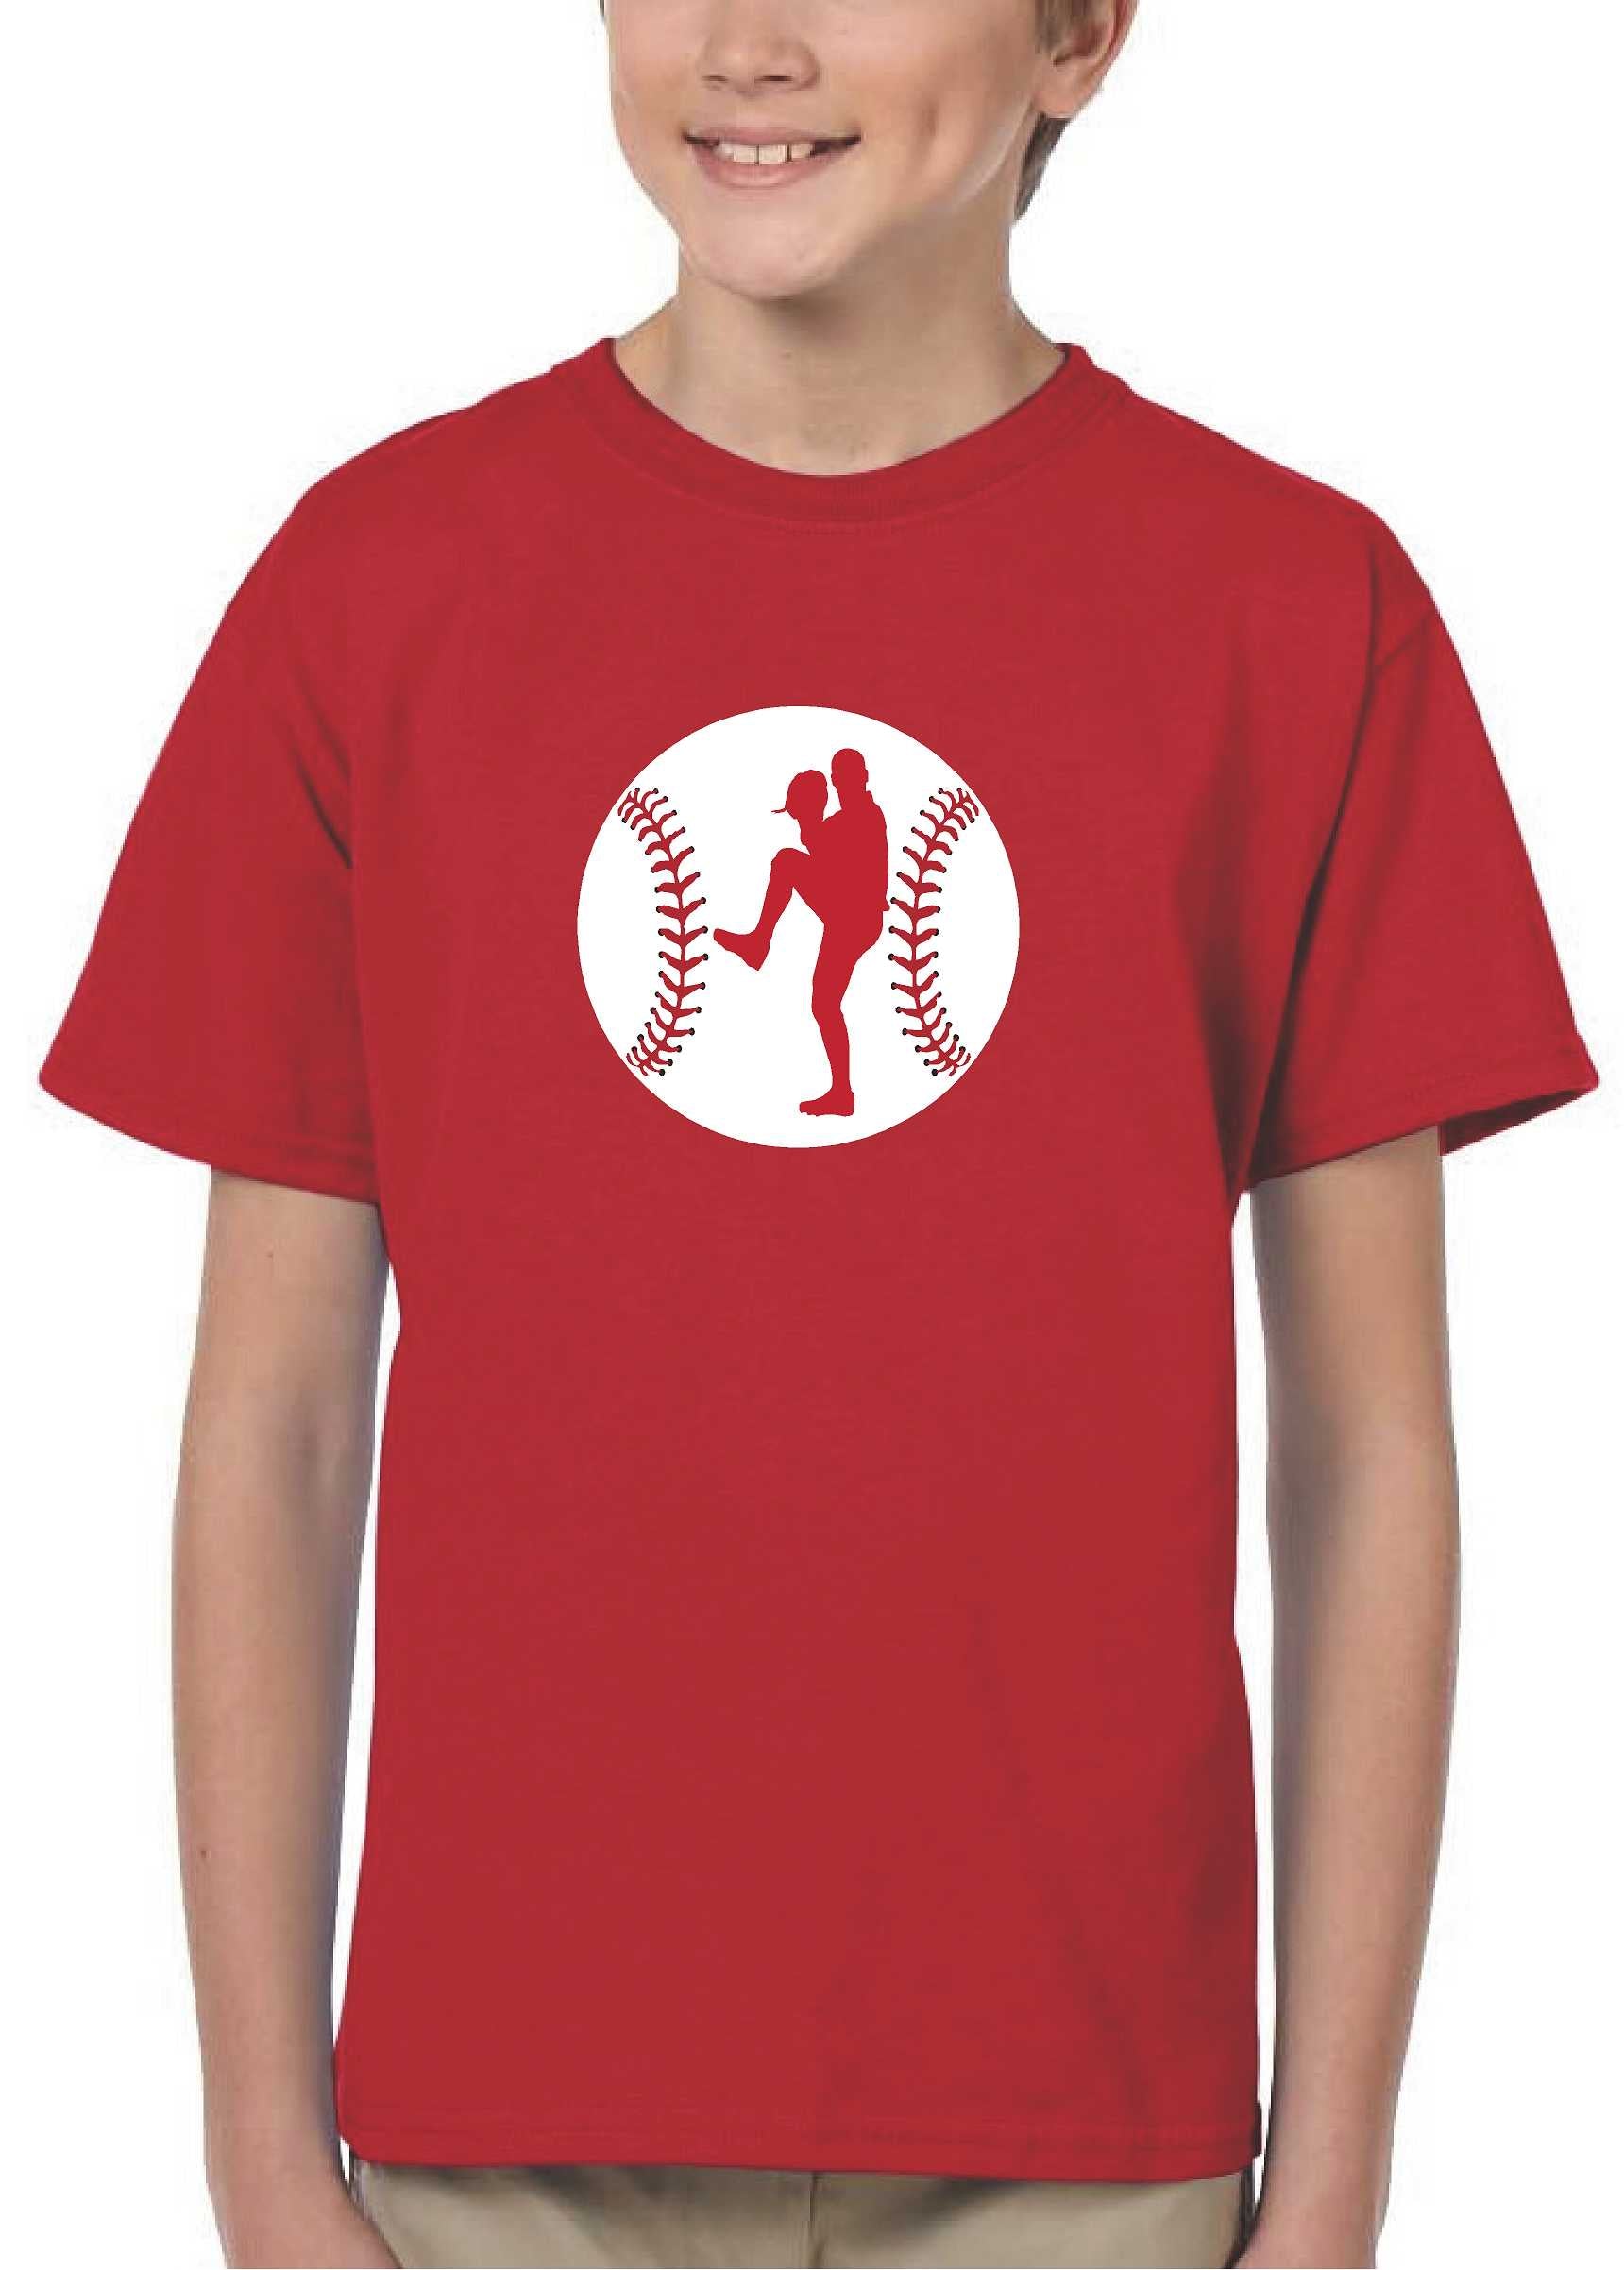 Shop All Graphic Baseball Tees & Baseball Shirts